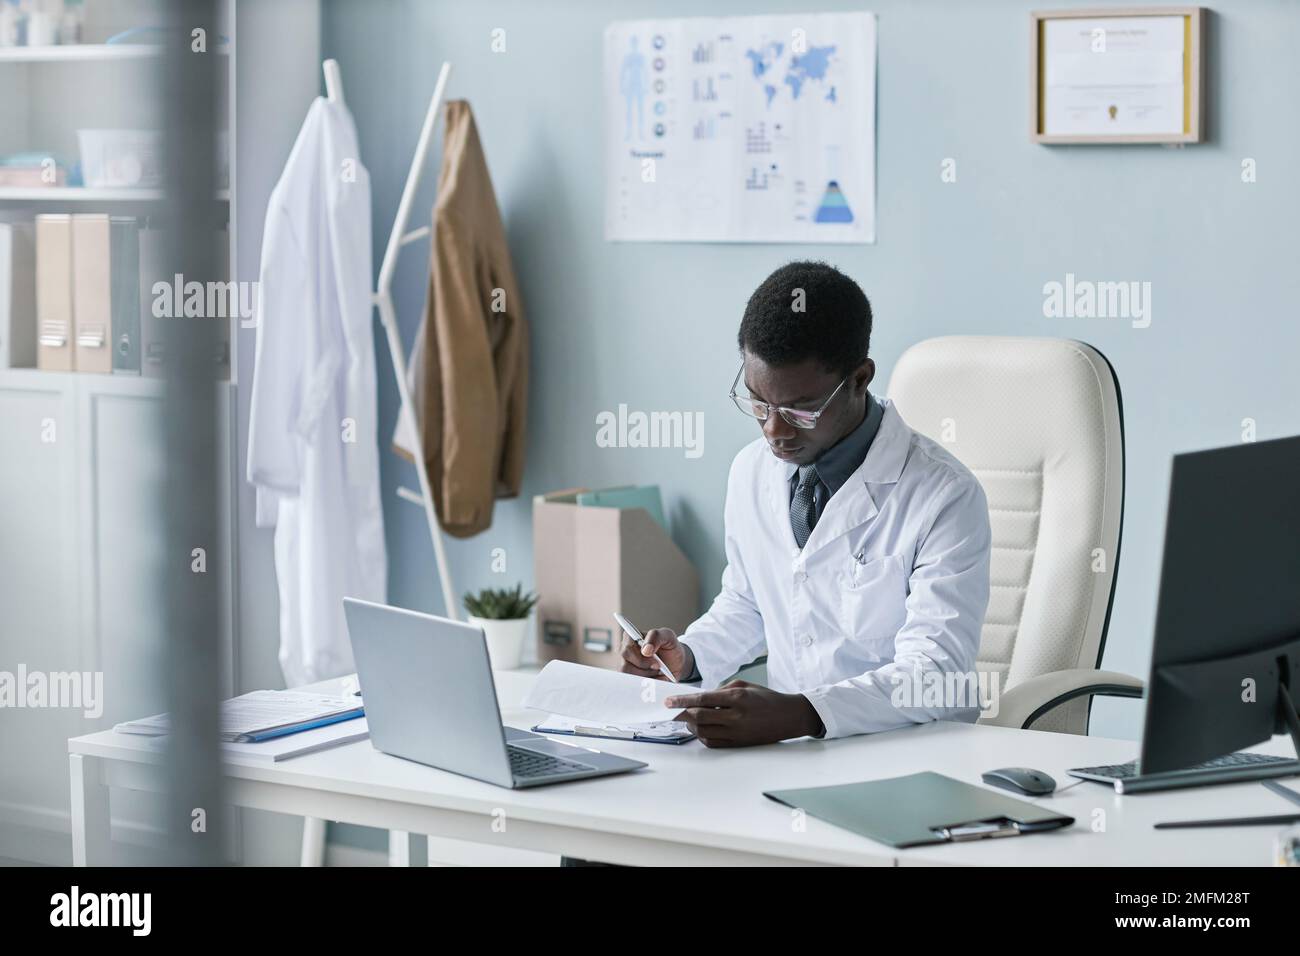 Portrait d'un jeune médecin noir travaillant avec des documents au bureau et portant un blouse de laboratoire Banque D'Images